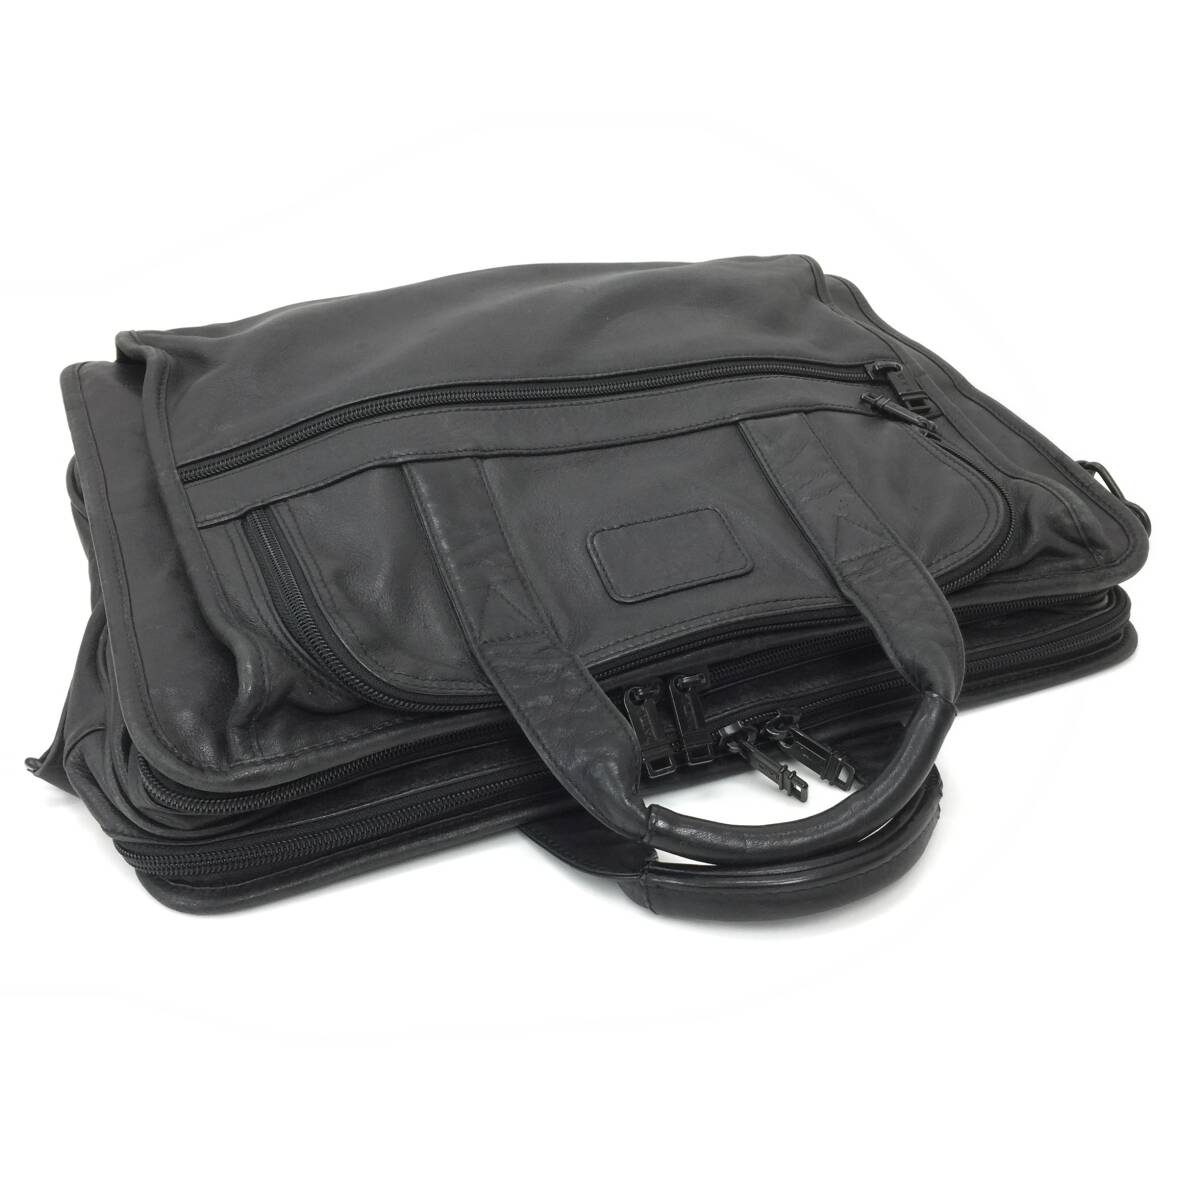 183 TUMI トゥミ レザー ビジネス バッグ 書類鞄 ブリーフケース トート 通勤 本革 皮革 バッグ A4 メンズ ブラック 黒 ストラップ欠品の画像3